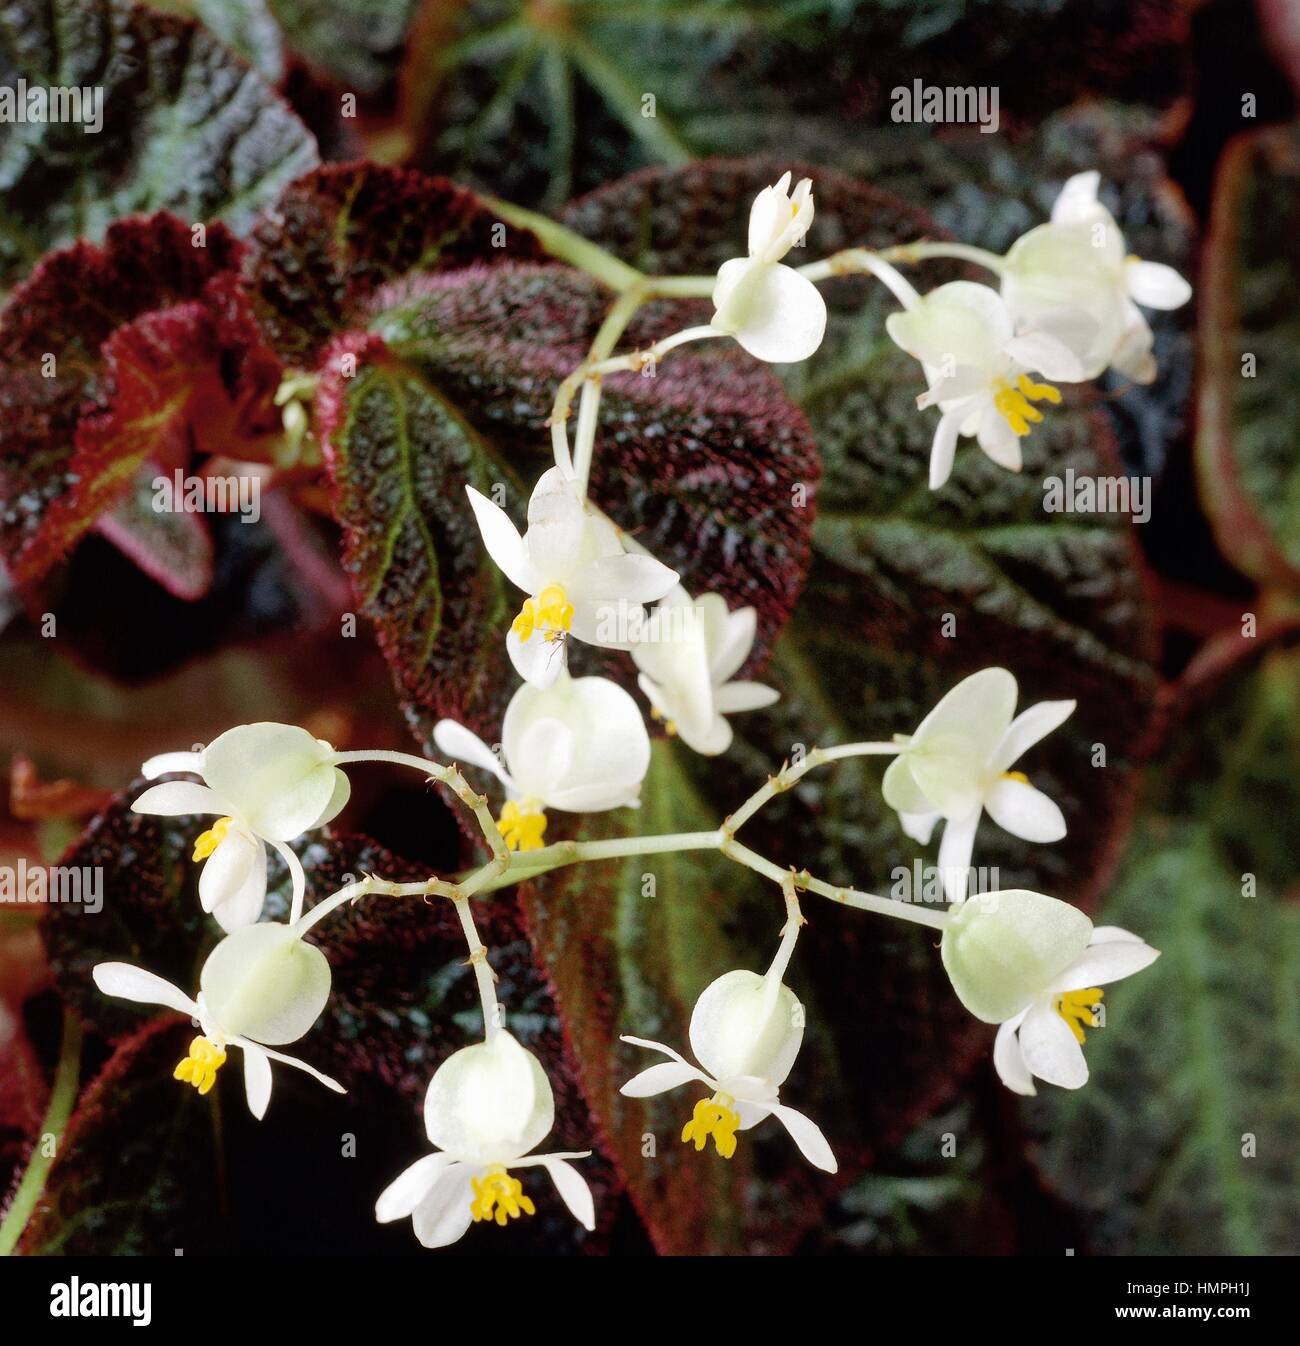 Tuberous begonia (Begonia x tuberhybrida ramentacea), Begoniaceae. Stock Photo